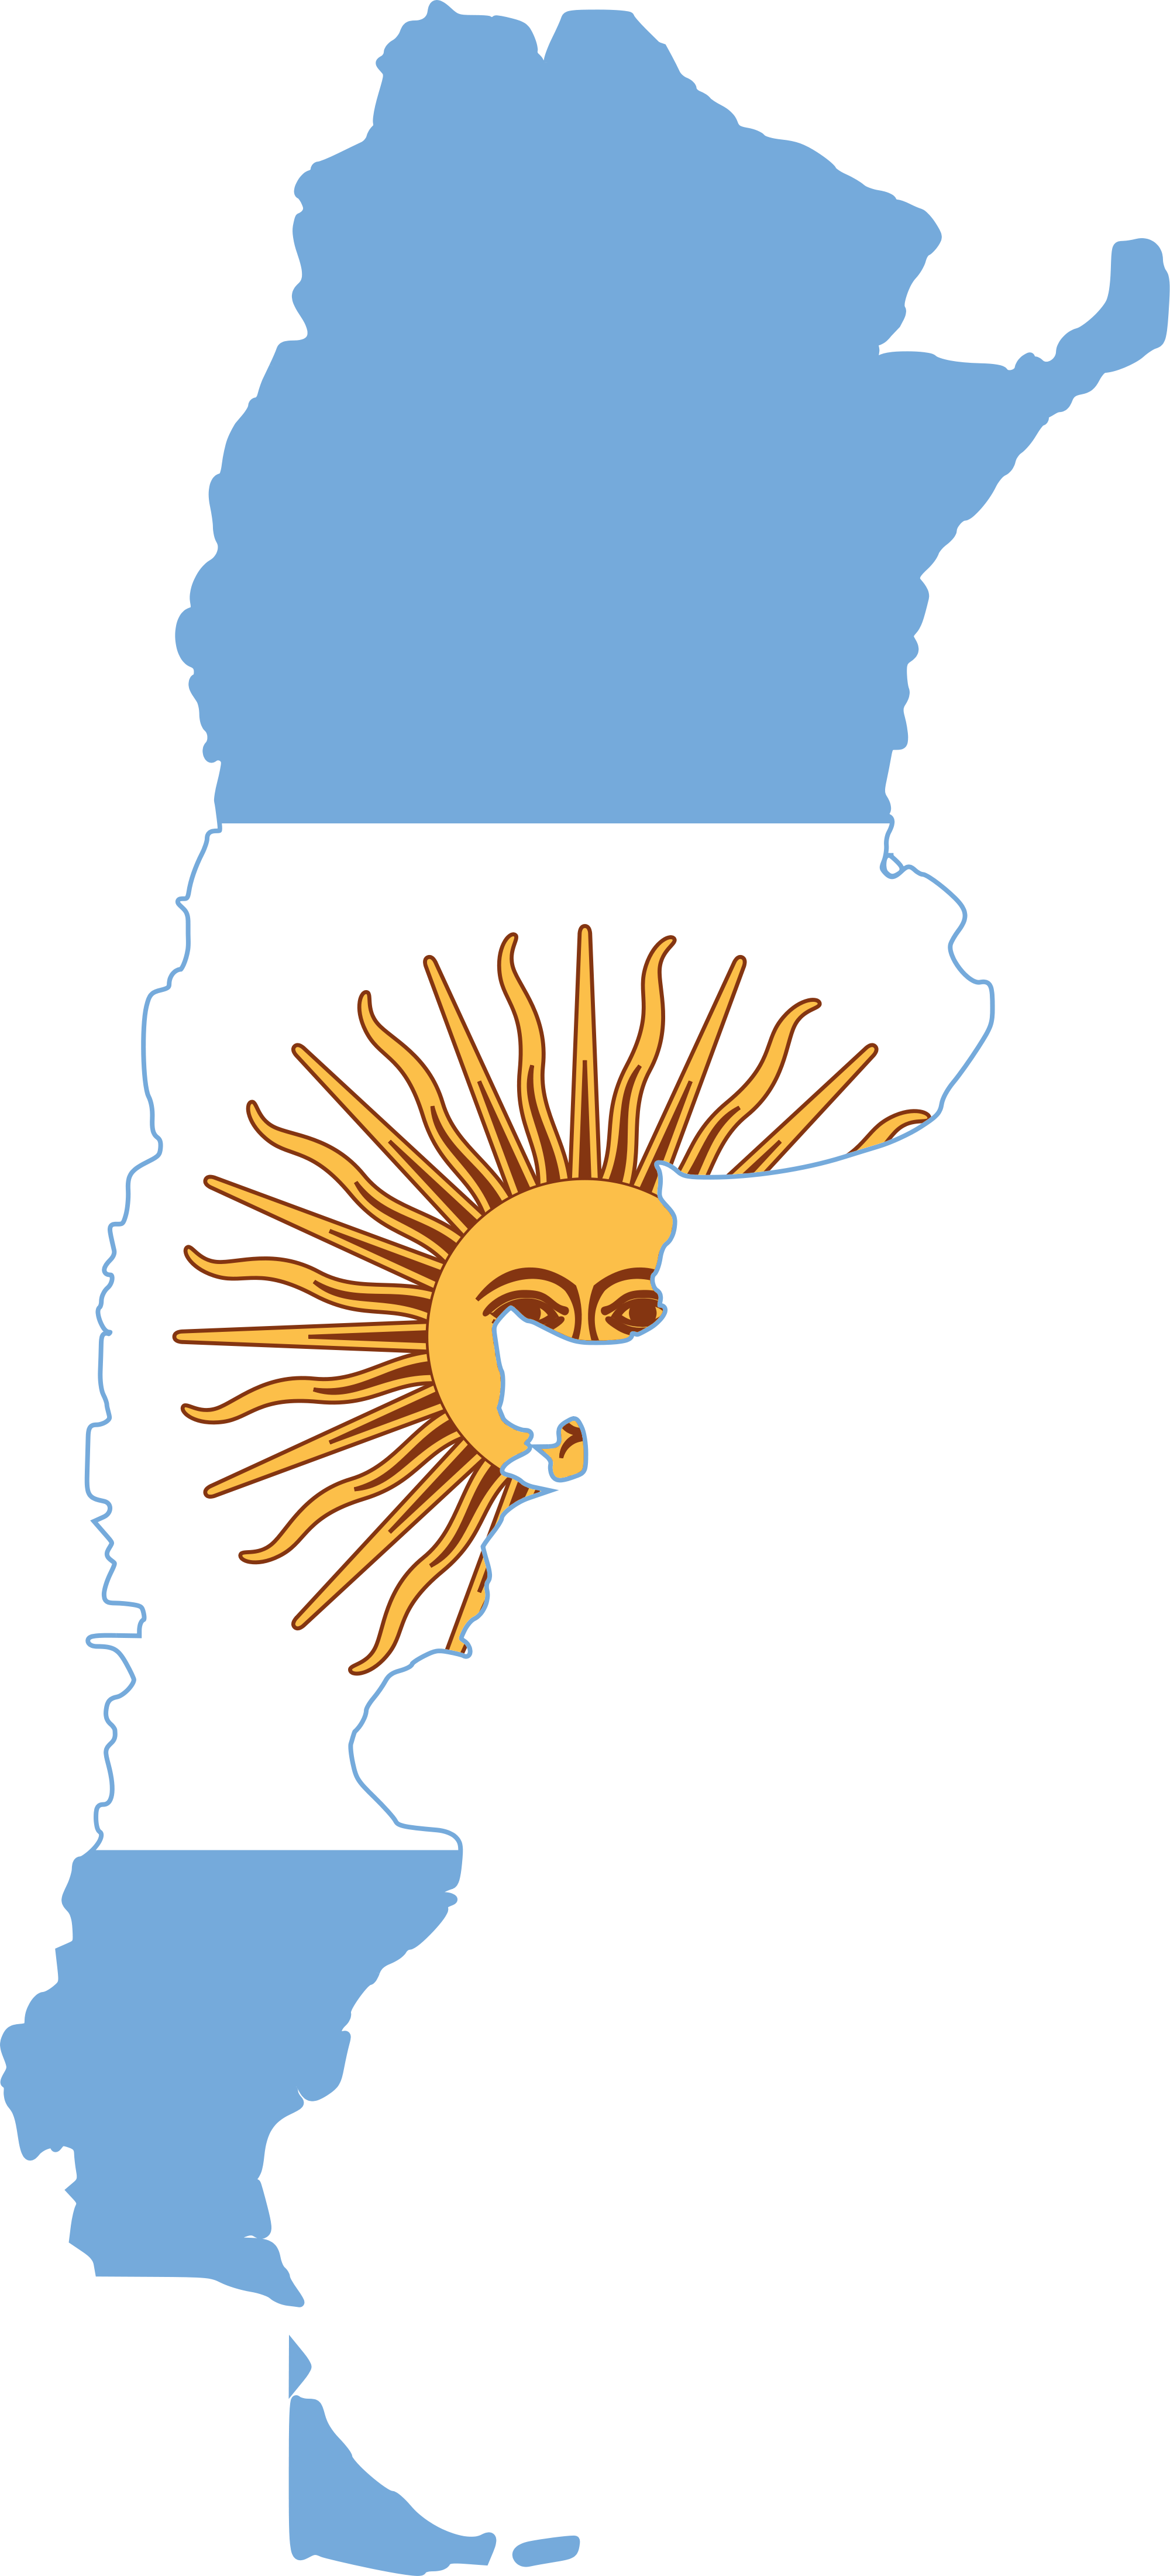 Argentina Clipart - Argentina Bandera Y Pais (2000x4402)